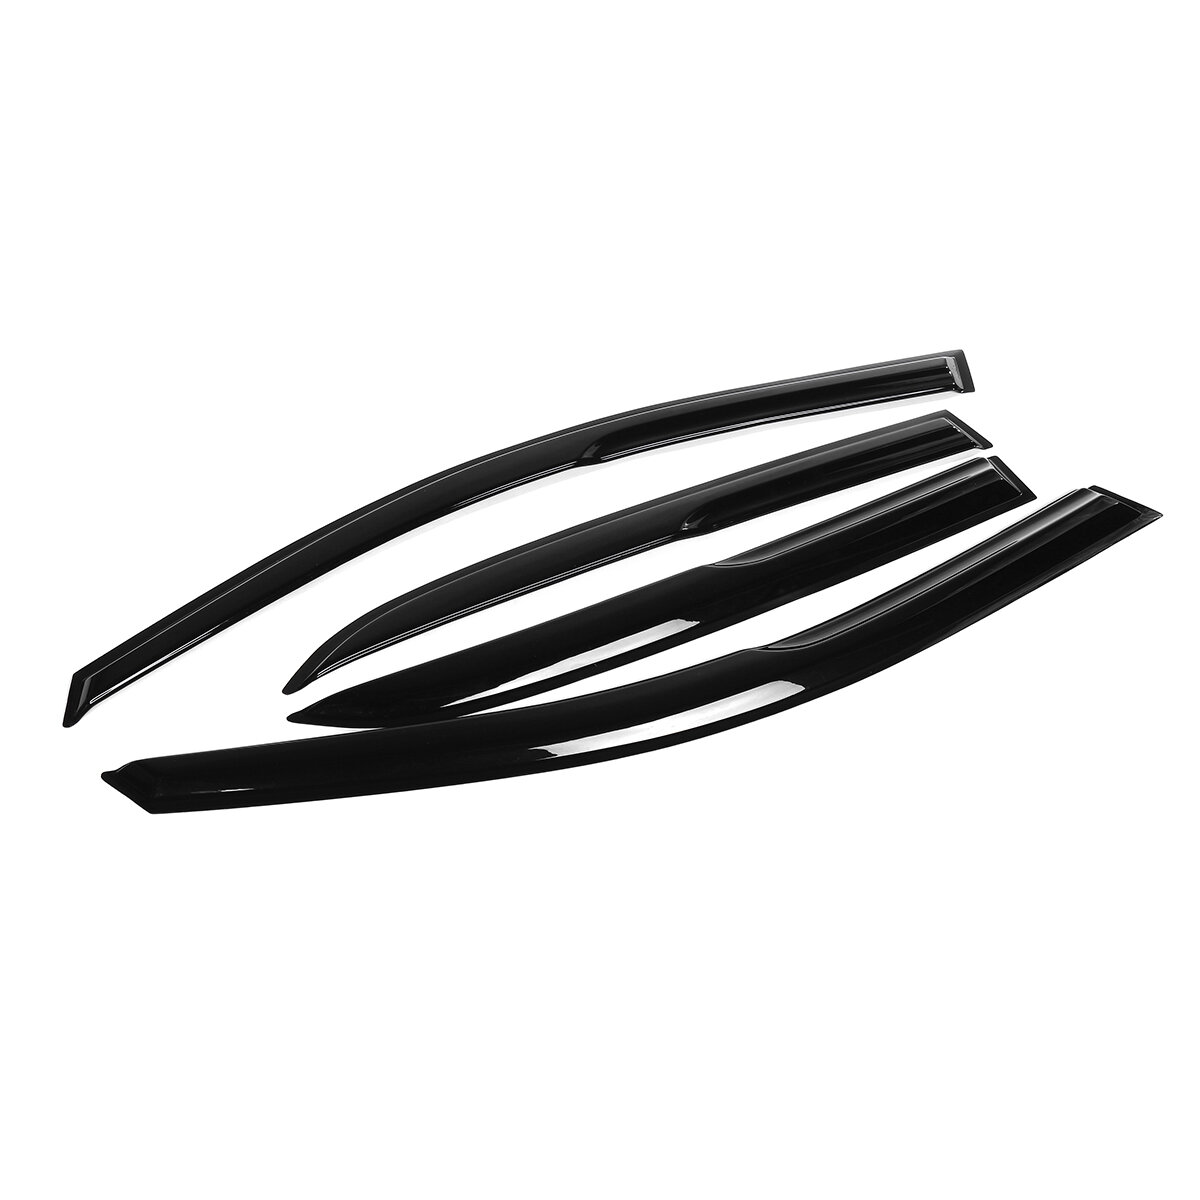 4 stuks Voor 03-07 Accord 4DR Coupe Mugen Stijl 3D Golvend Zwart Plastic Exterieur Vizier Vent Shade